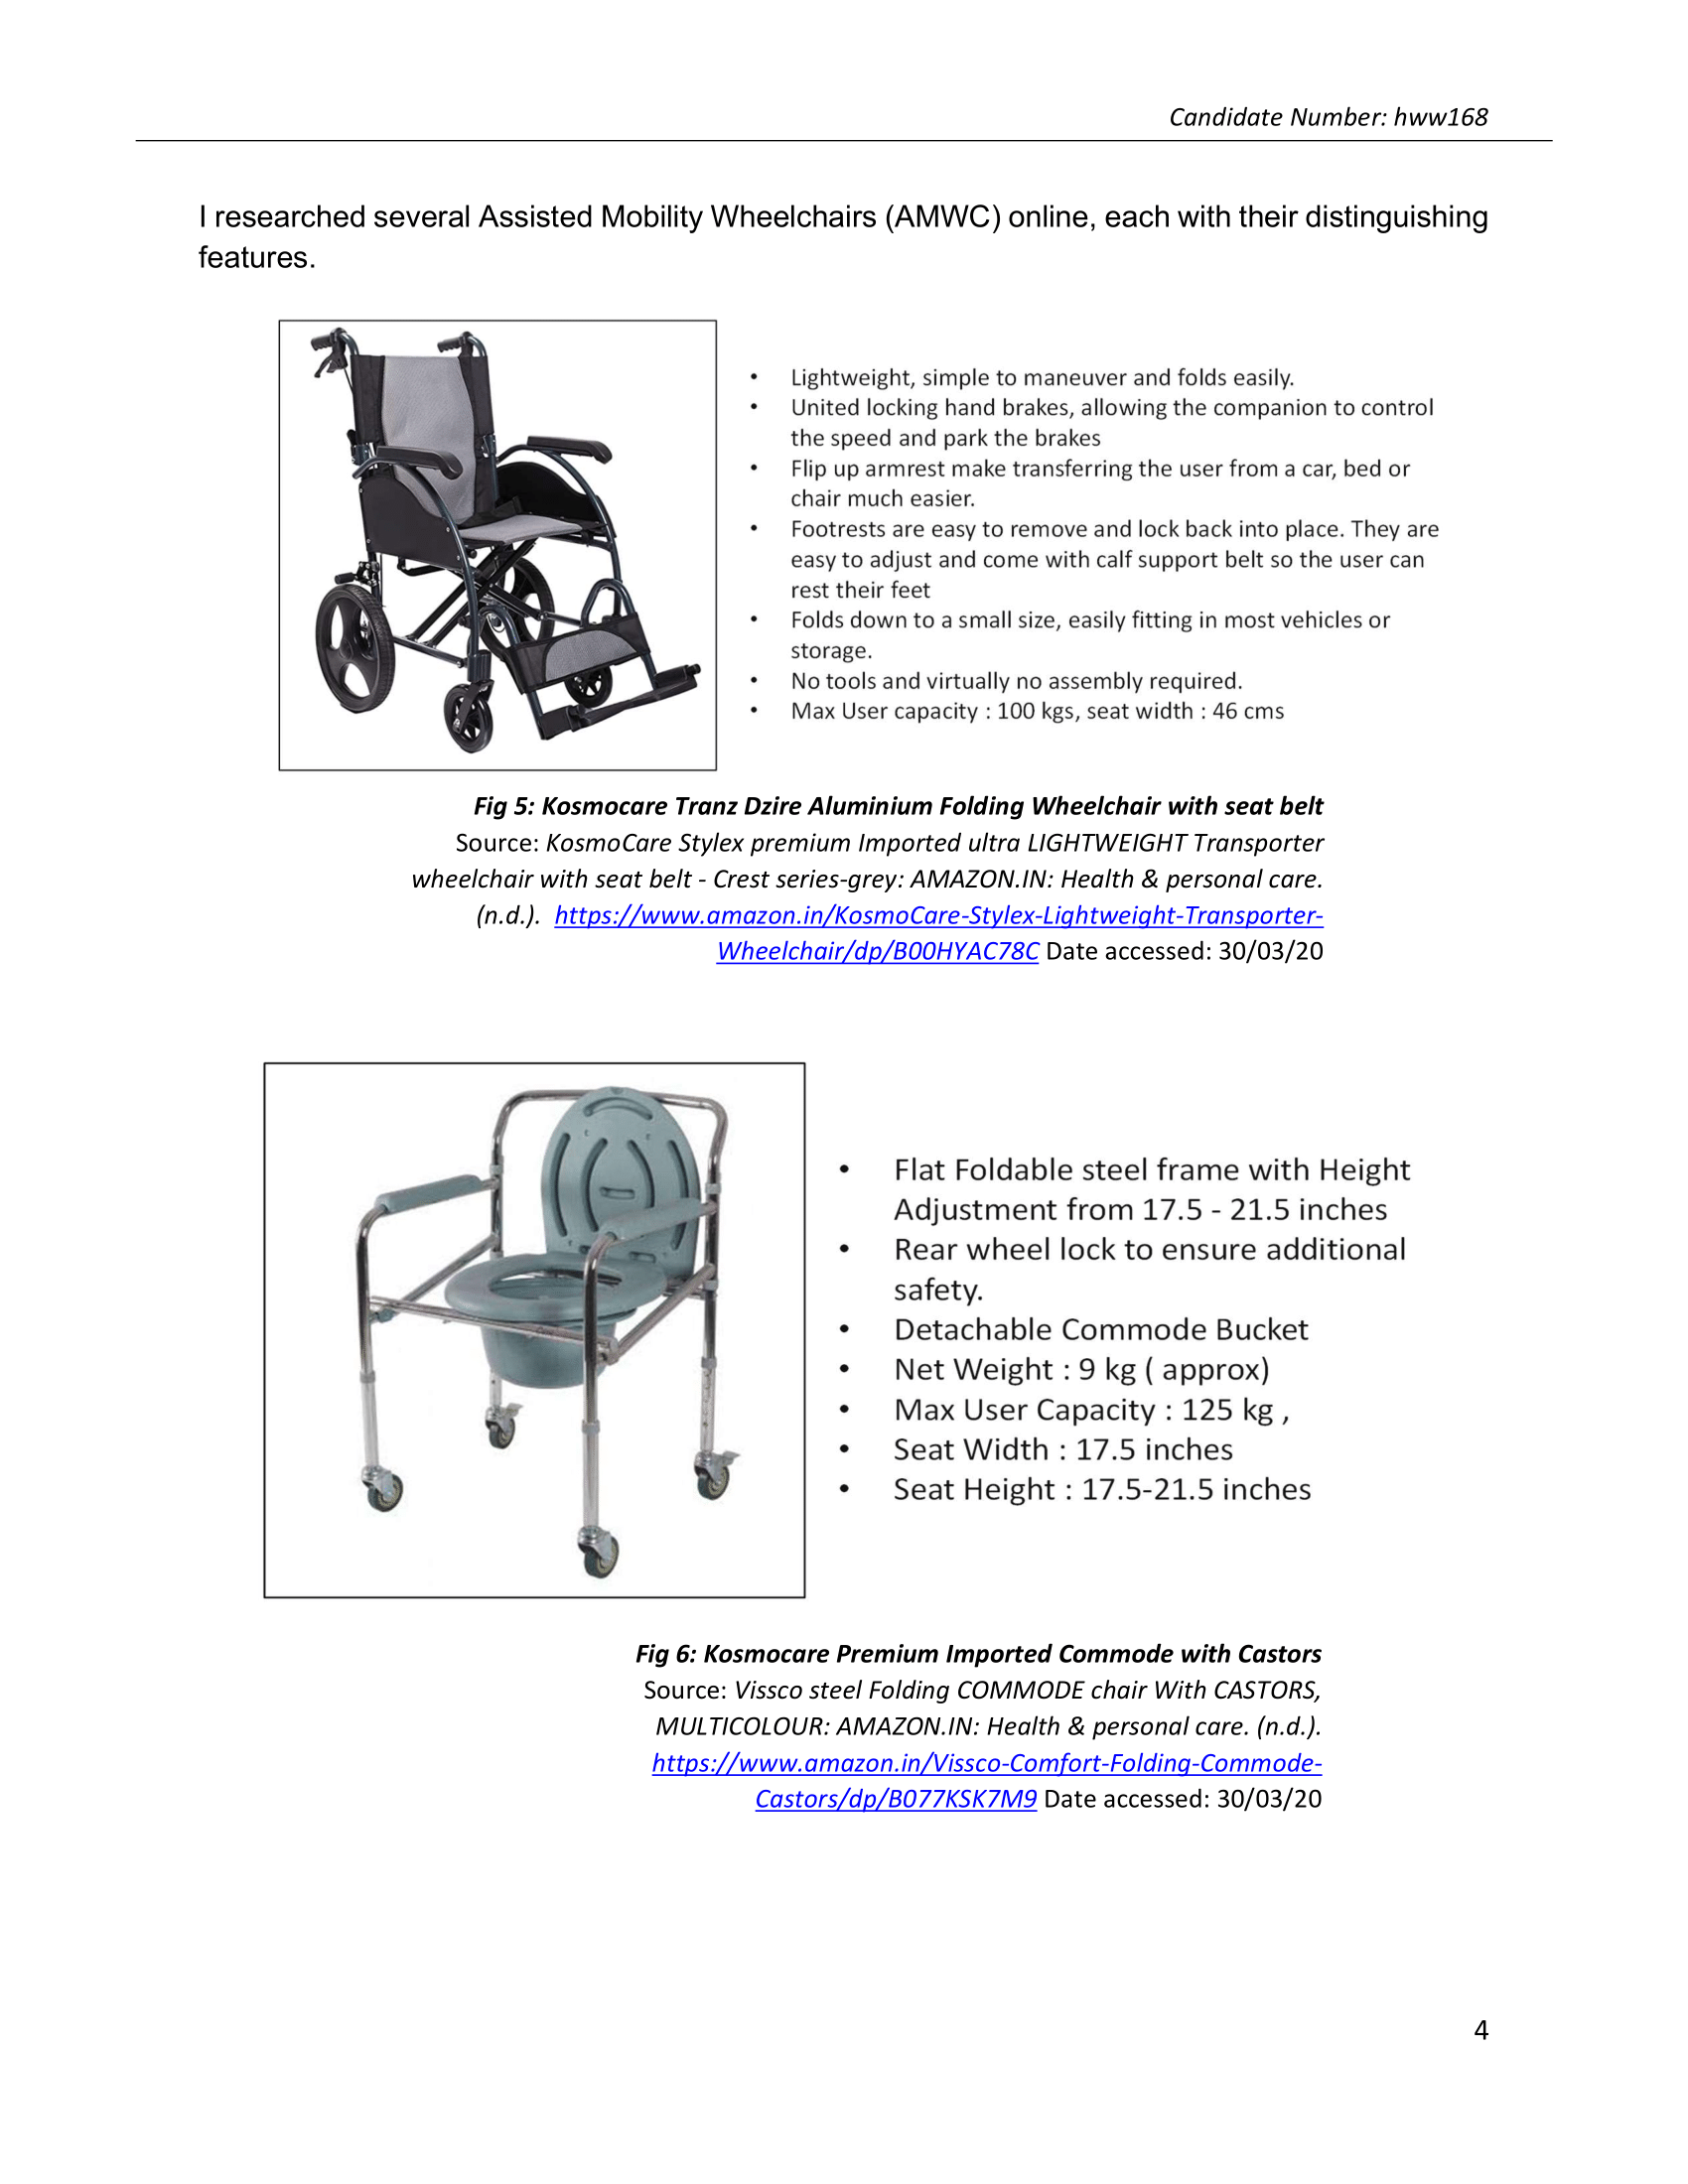 KosmoCare Stylex Premium Transporter Wheelchair With Seat Belt